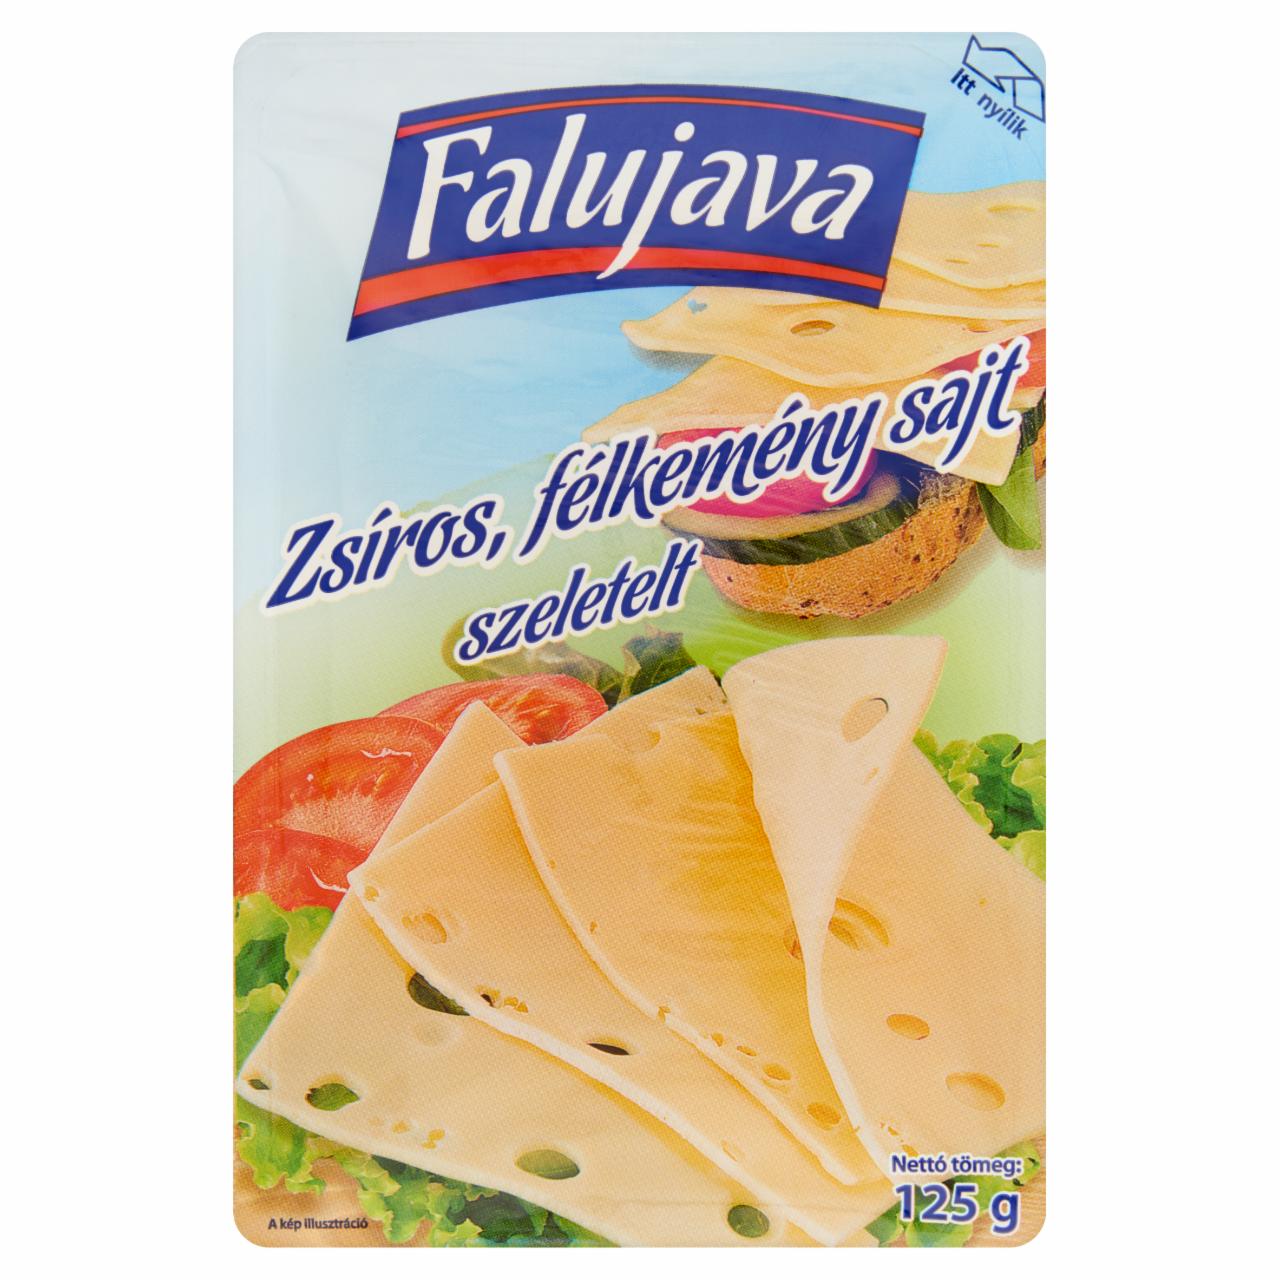 Képek - Falujava zsíros félkemény szeletelt sajt 125 g